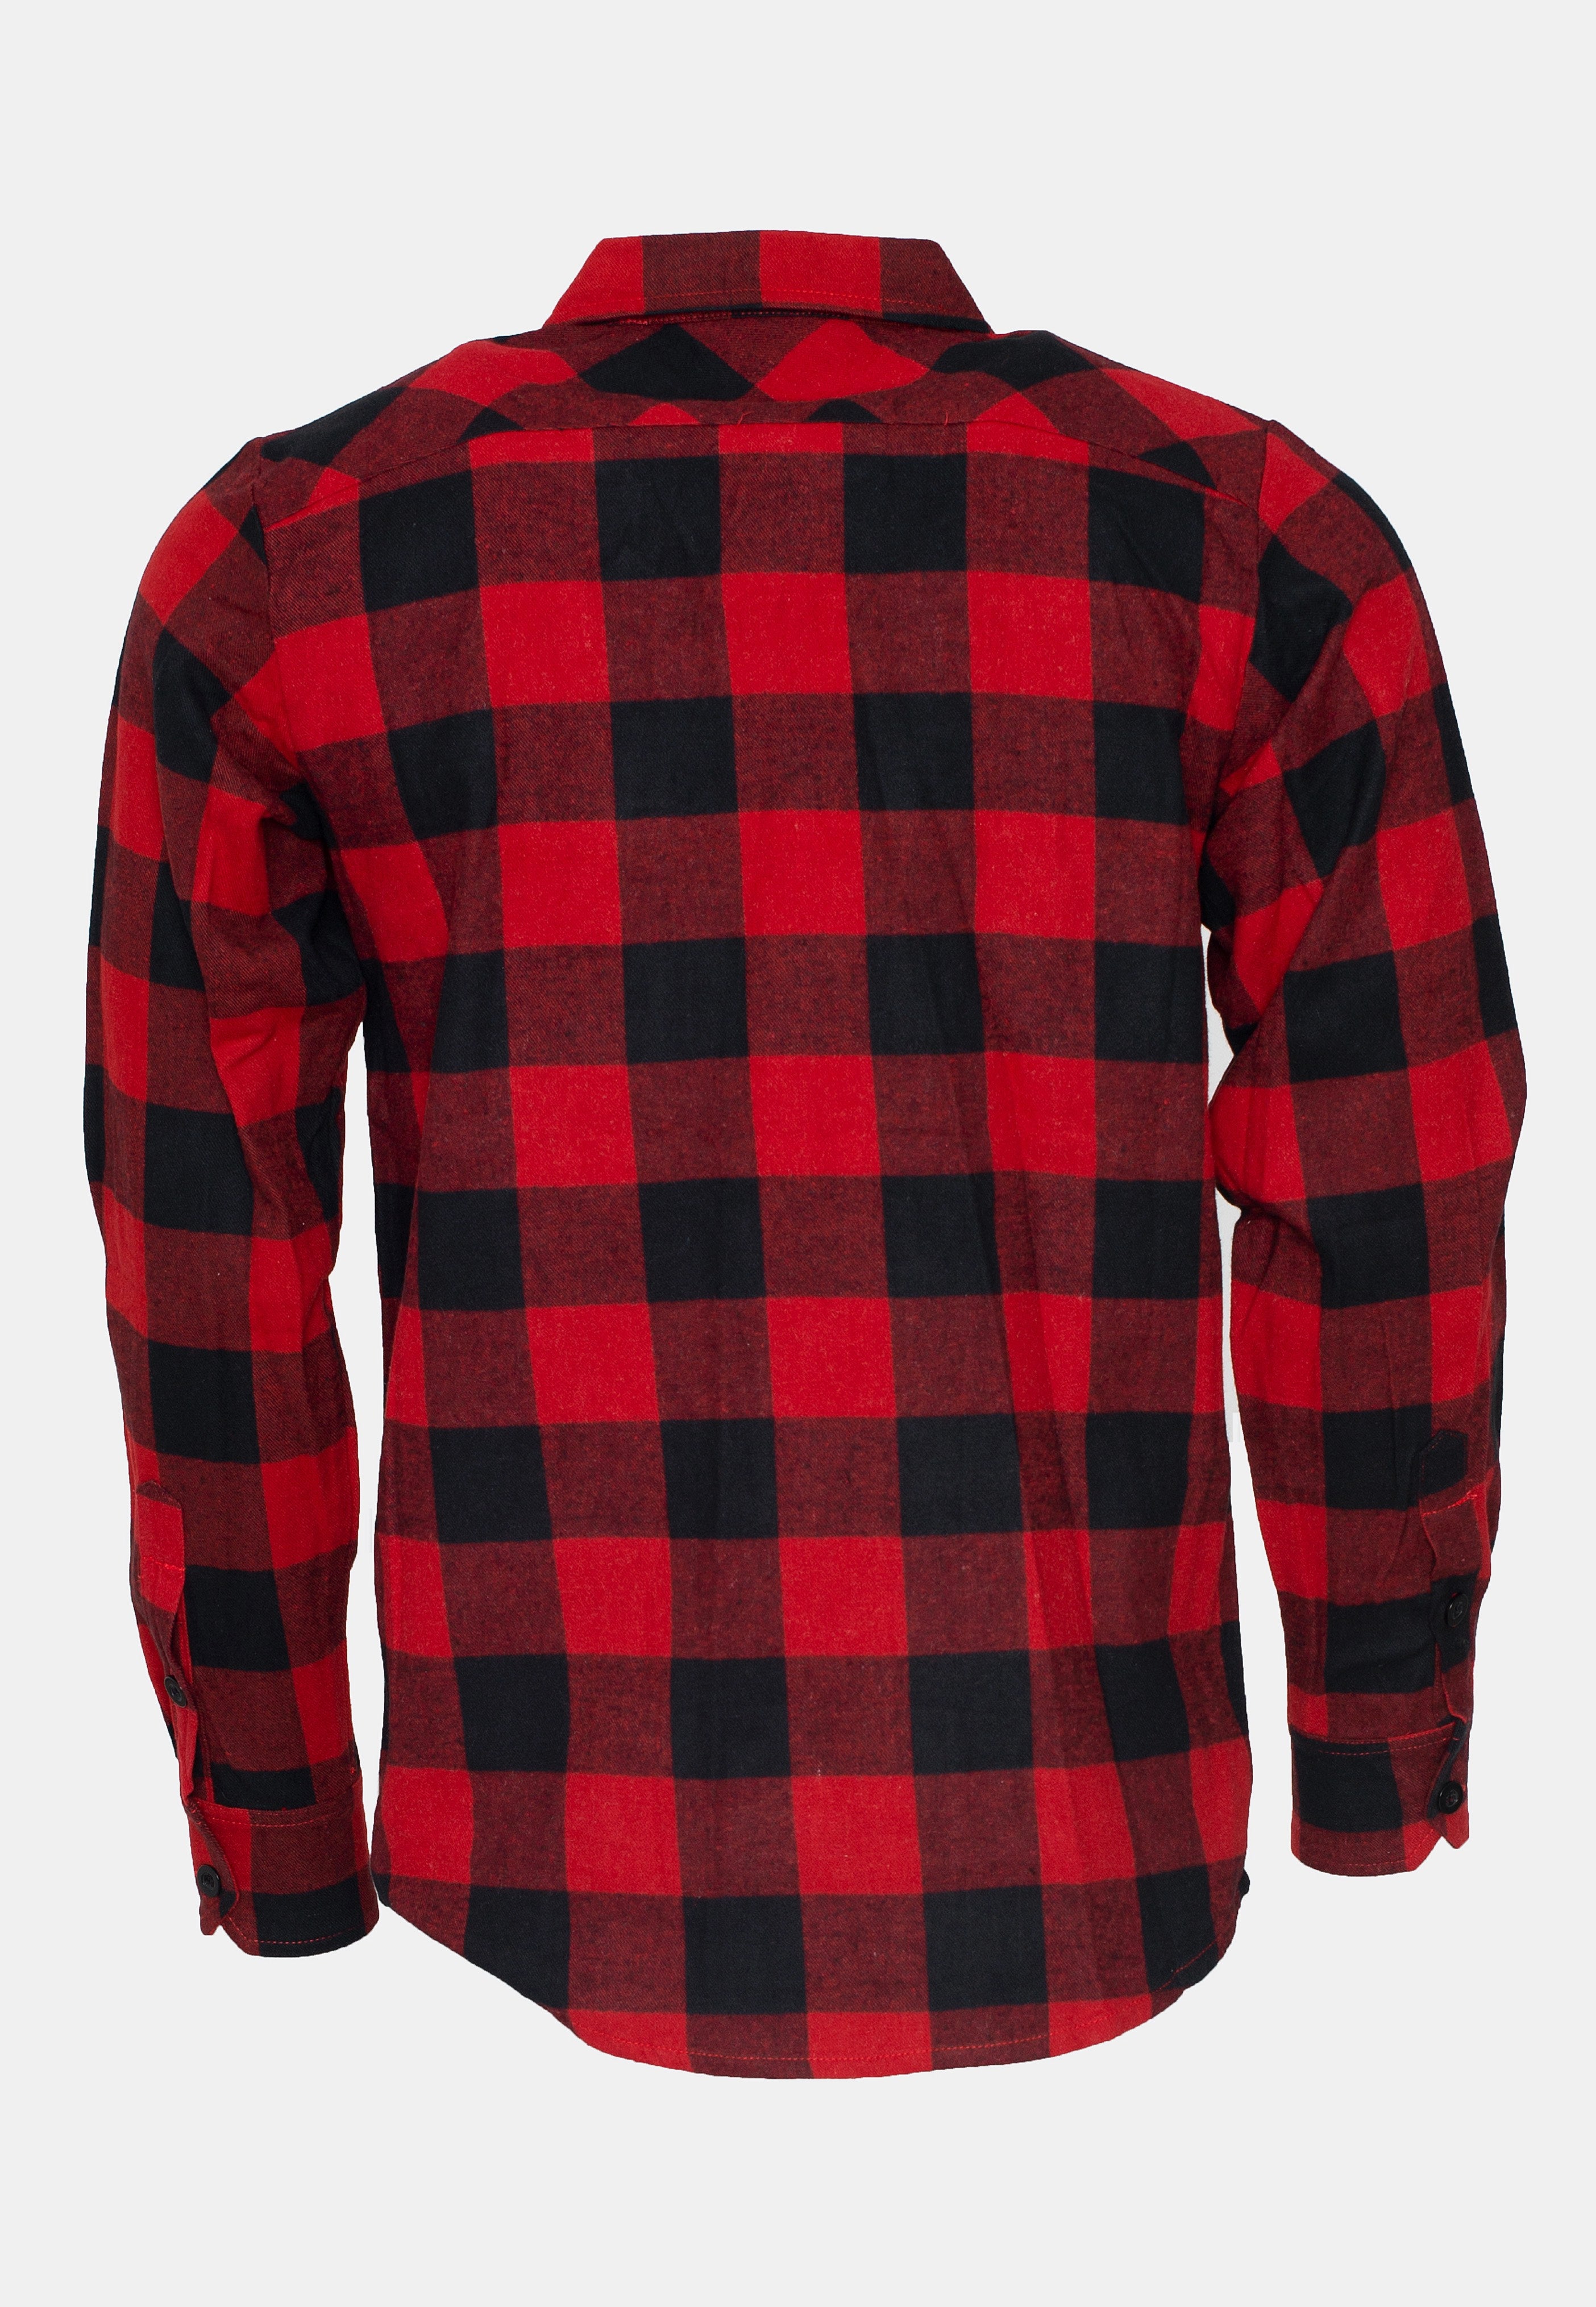 Ironnail - Hooft Black/Red Flanell - Shirt